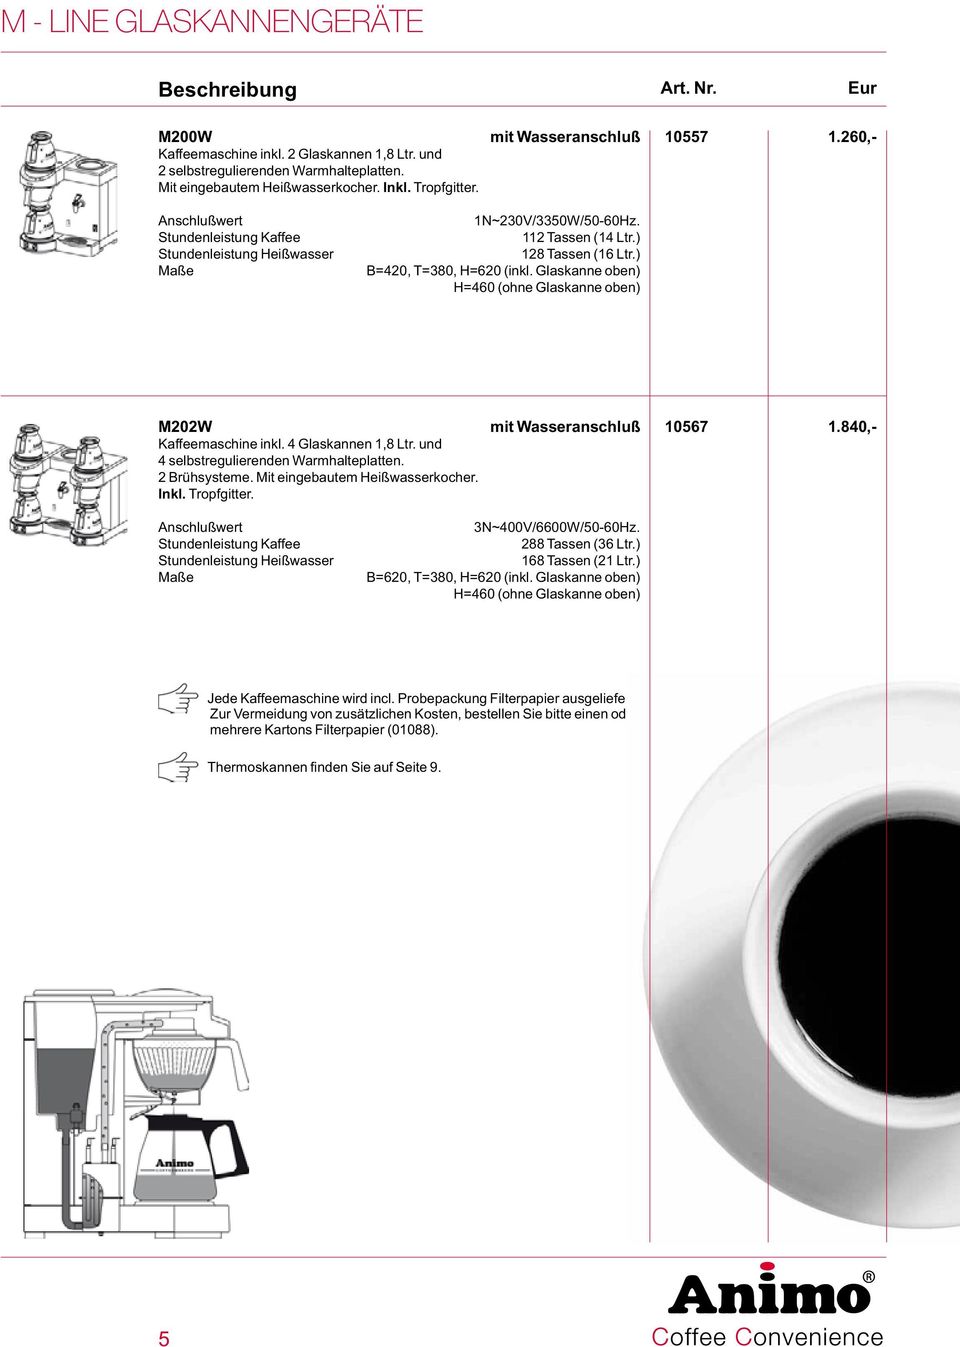 Glaskanne oben) H=460 (ohne Glaskanne oben) M202W mit Wasseranschluß 10567 1.840,- Kaffeemaschine inkl. 4 Glaskannen 1,8 Ltr. und 4 selbstregulierenden Warmhalteplatten. 2 Brühsysteme.